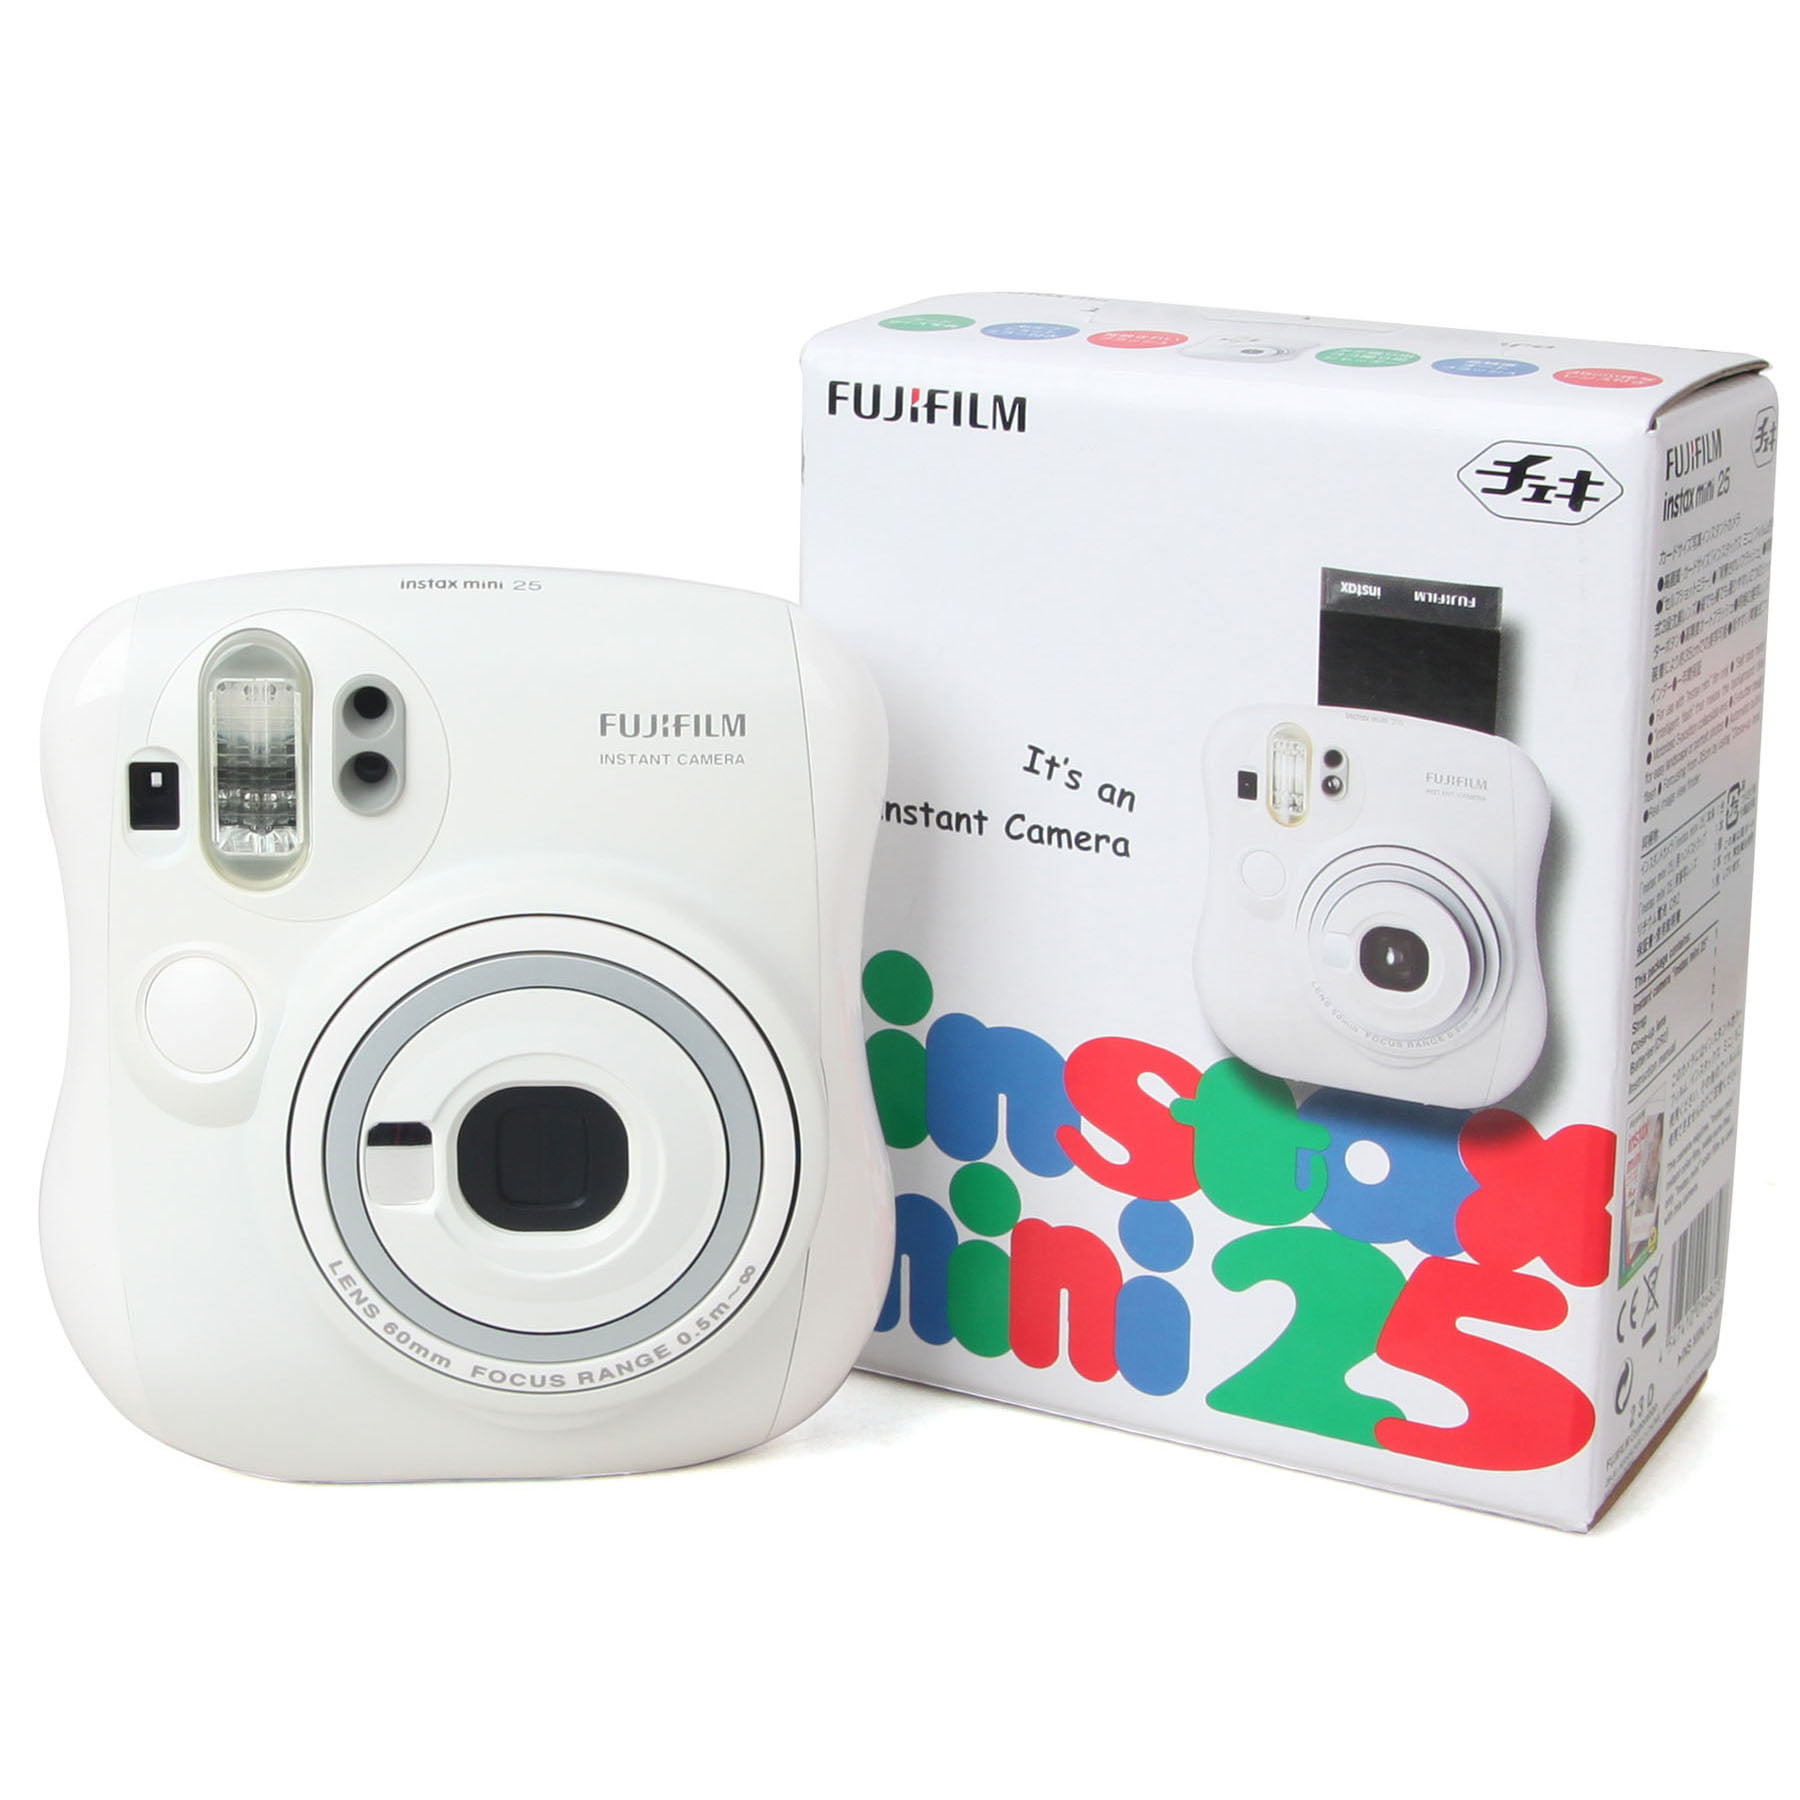 auteur verlangen verwennen Fujifilm Instax MINI 25 Instant Film Camera, White - Walmart.com